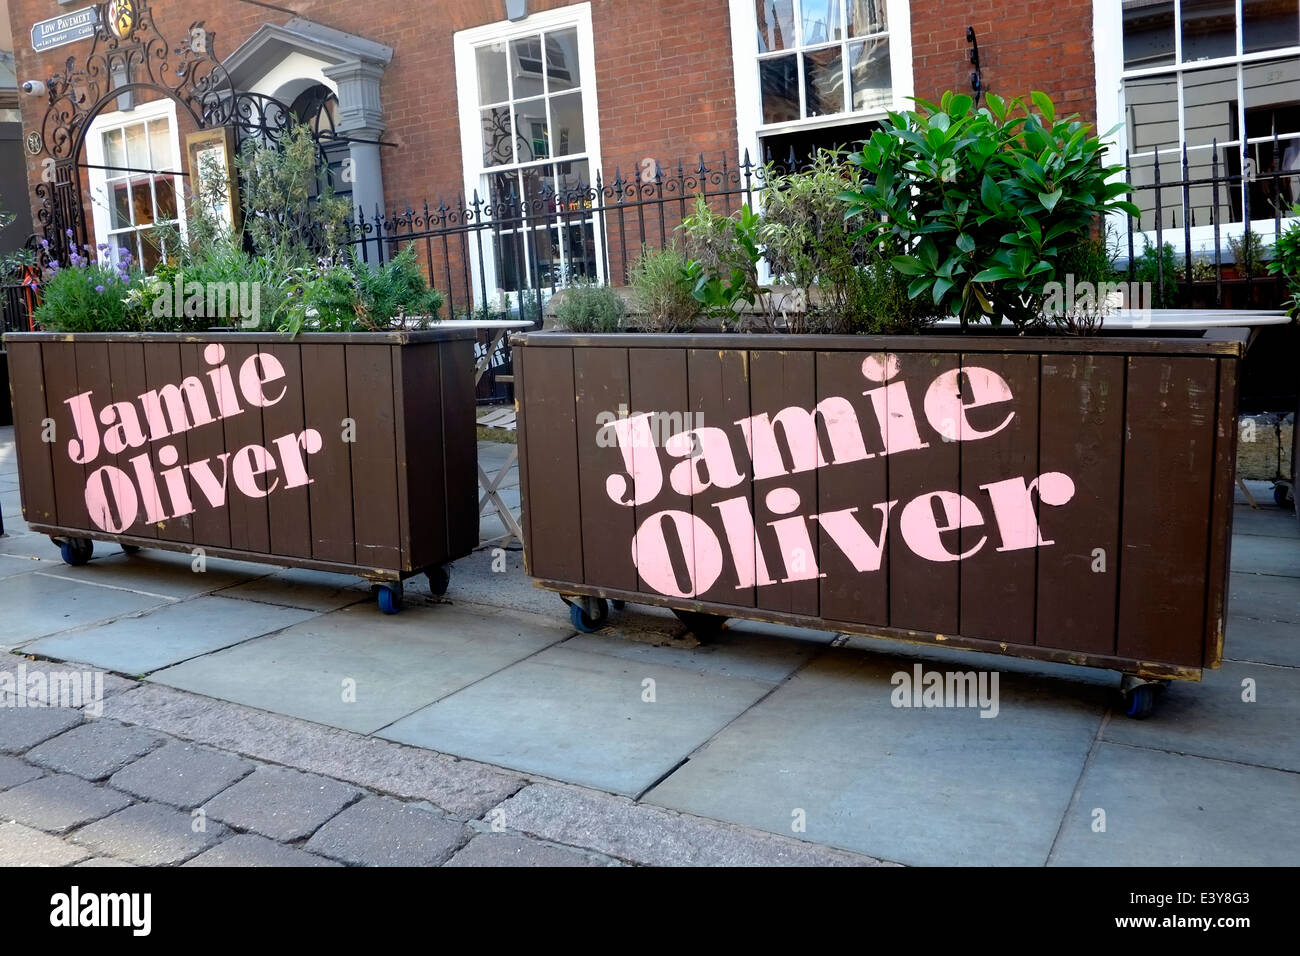 A Jamie Oliver Italian Restaurant Nottingham England UK Stock Photo